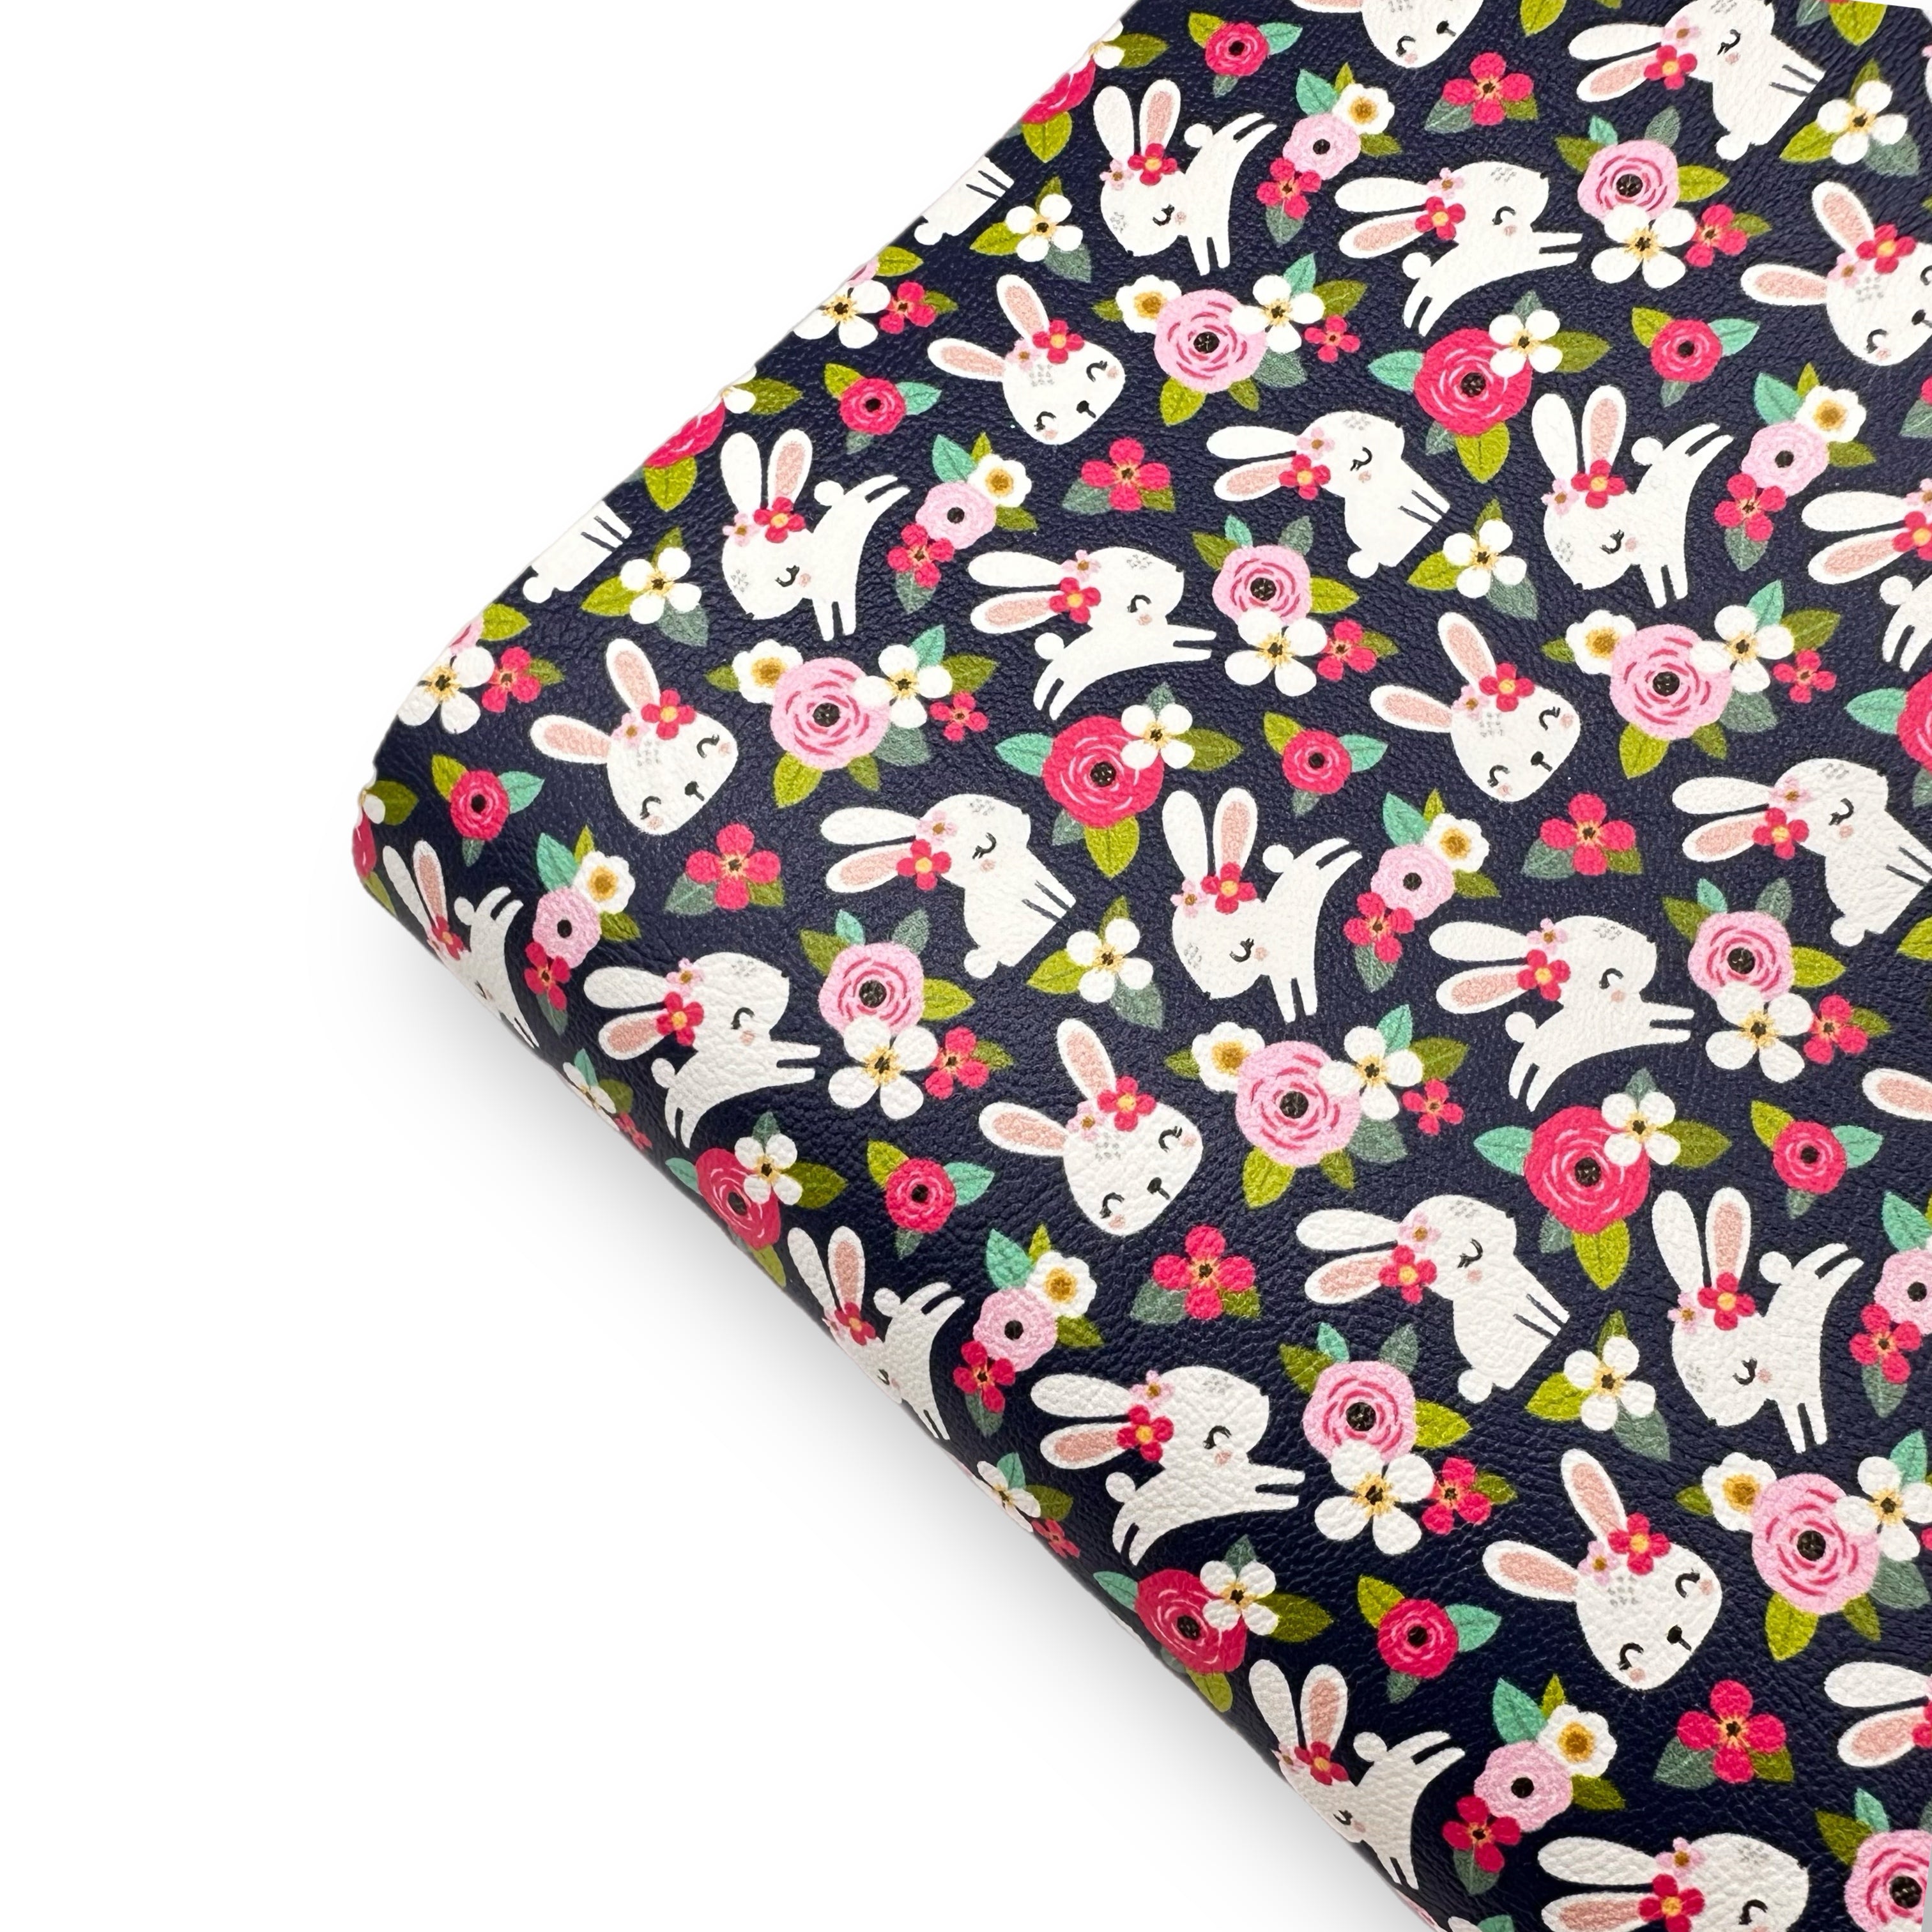 Hop, Hop, Lil Bunny Premium Faux Leather Fabric